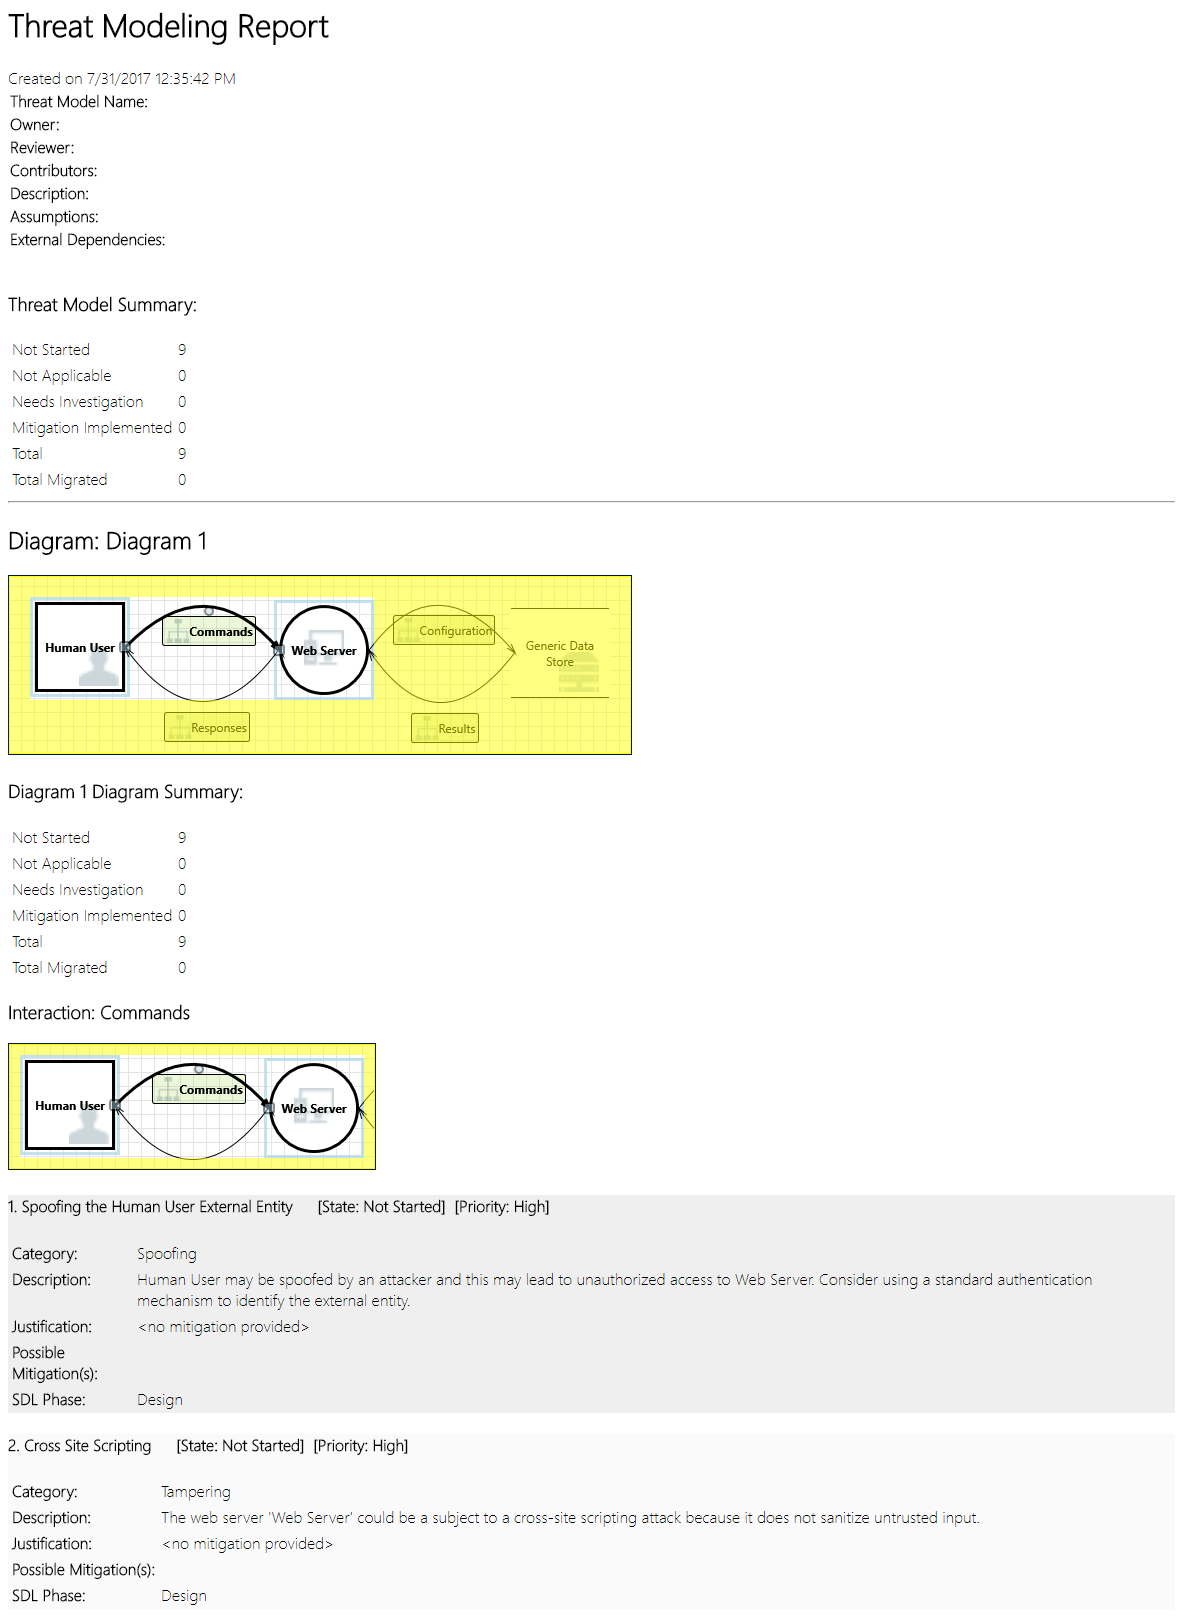 Captura de pantalla que muestra un ejemplo de informe de Threat Modeling, que incluye un resumen, diagramas y otra información.